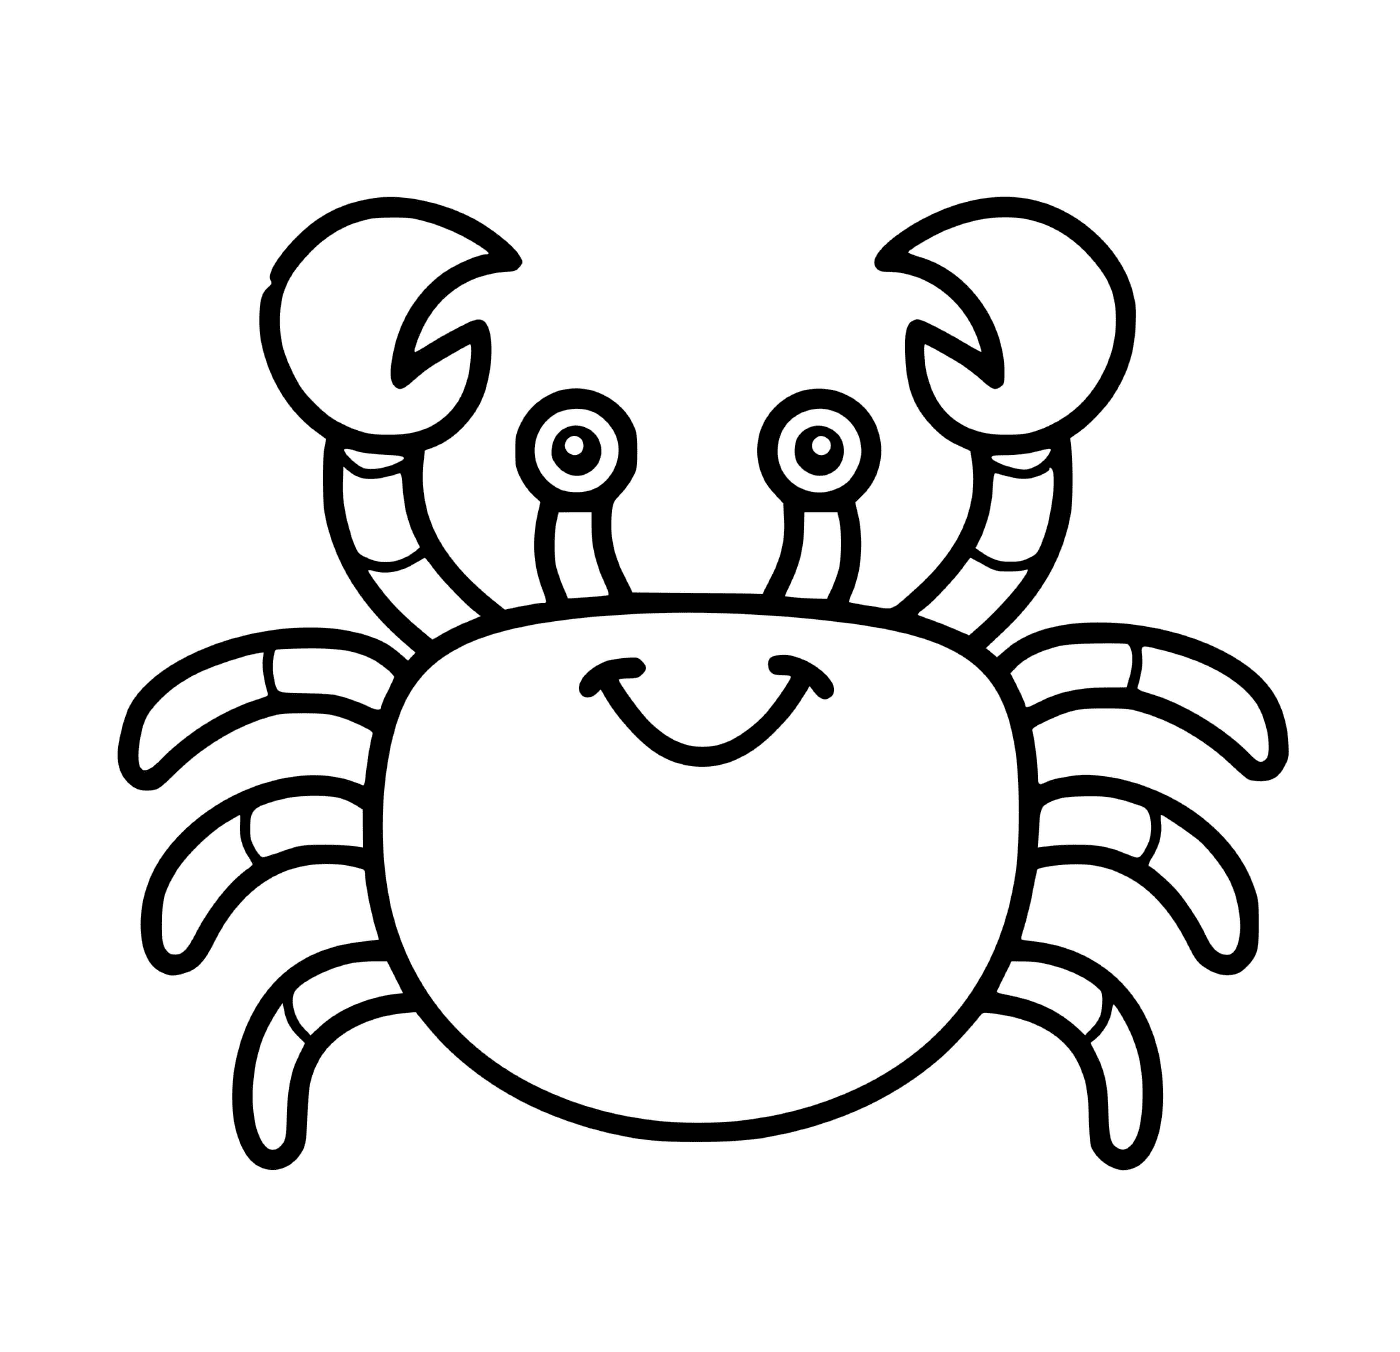   Un crabe facile à réaliser en maternelle 